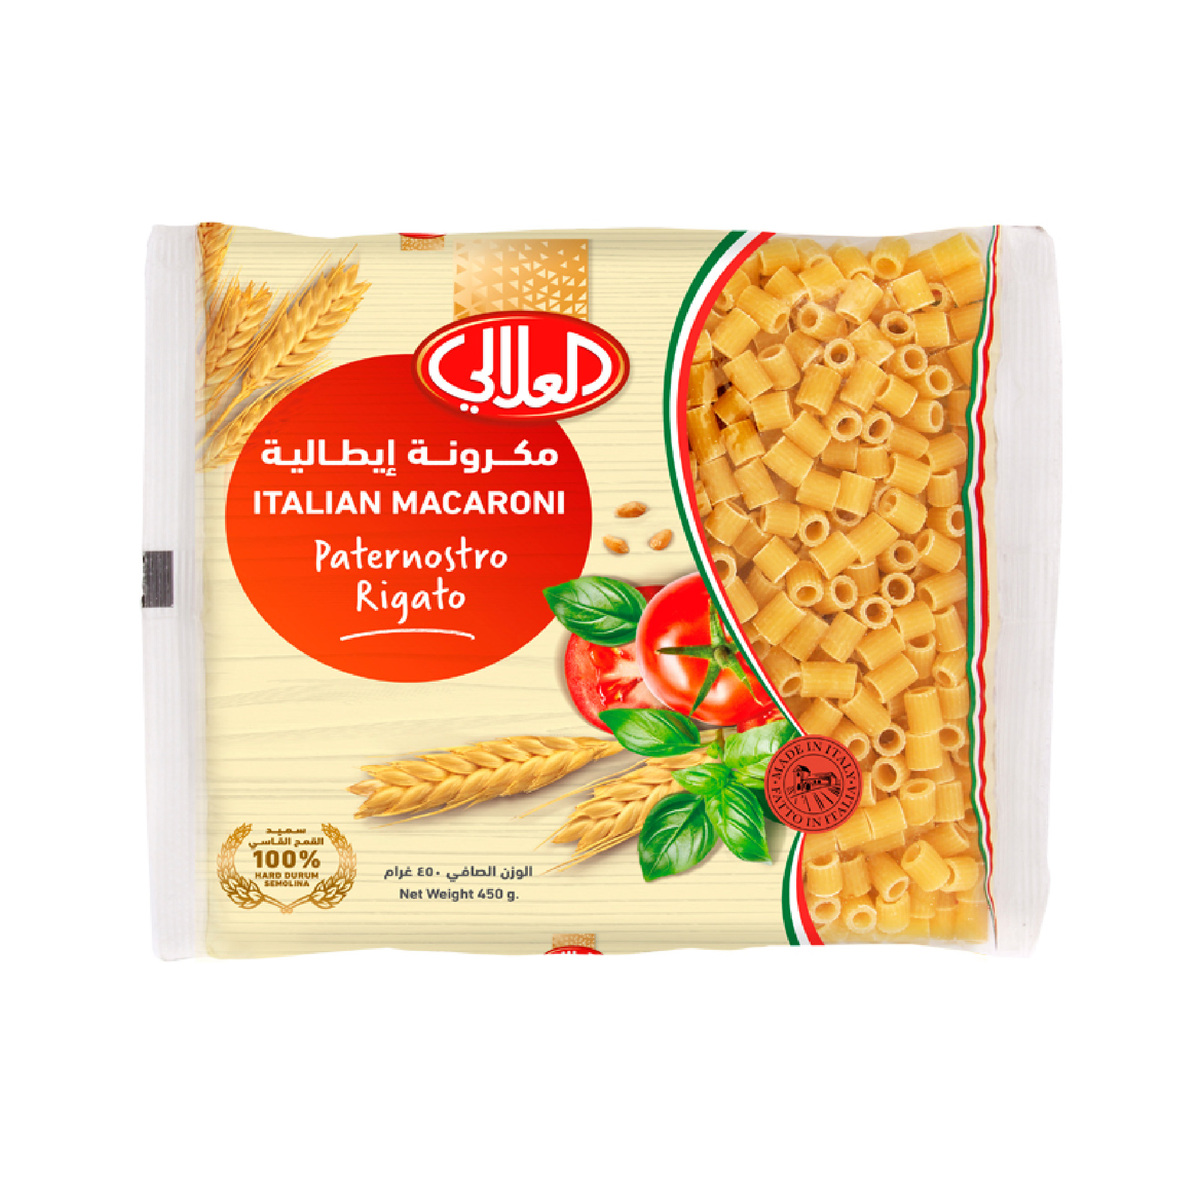 Buy Al Alali Italian Macaroni Paternostro Rigato 450 g Online at Best Price | Pasta | Lulu KSA in Saudi Arabia